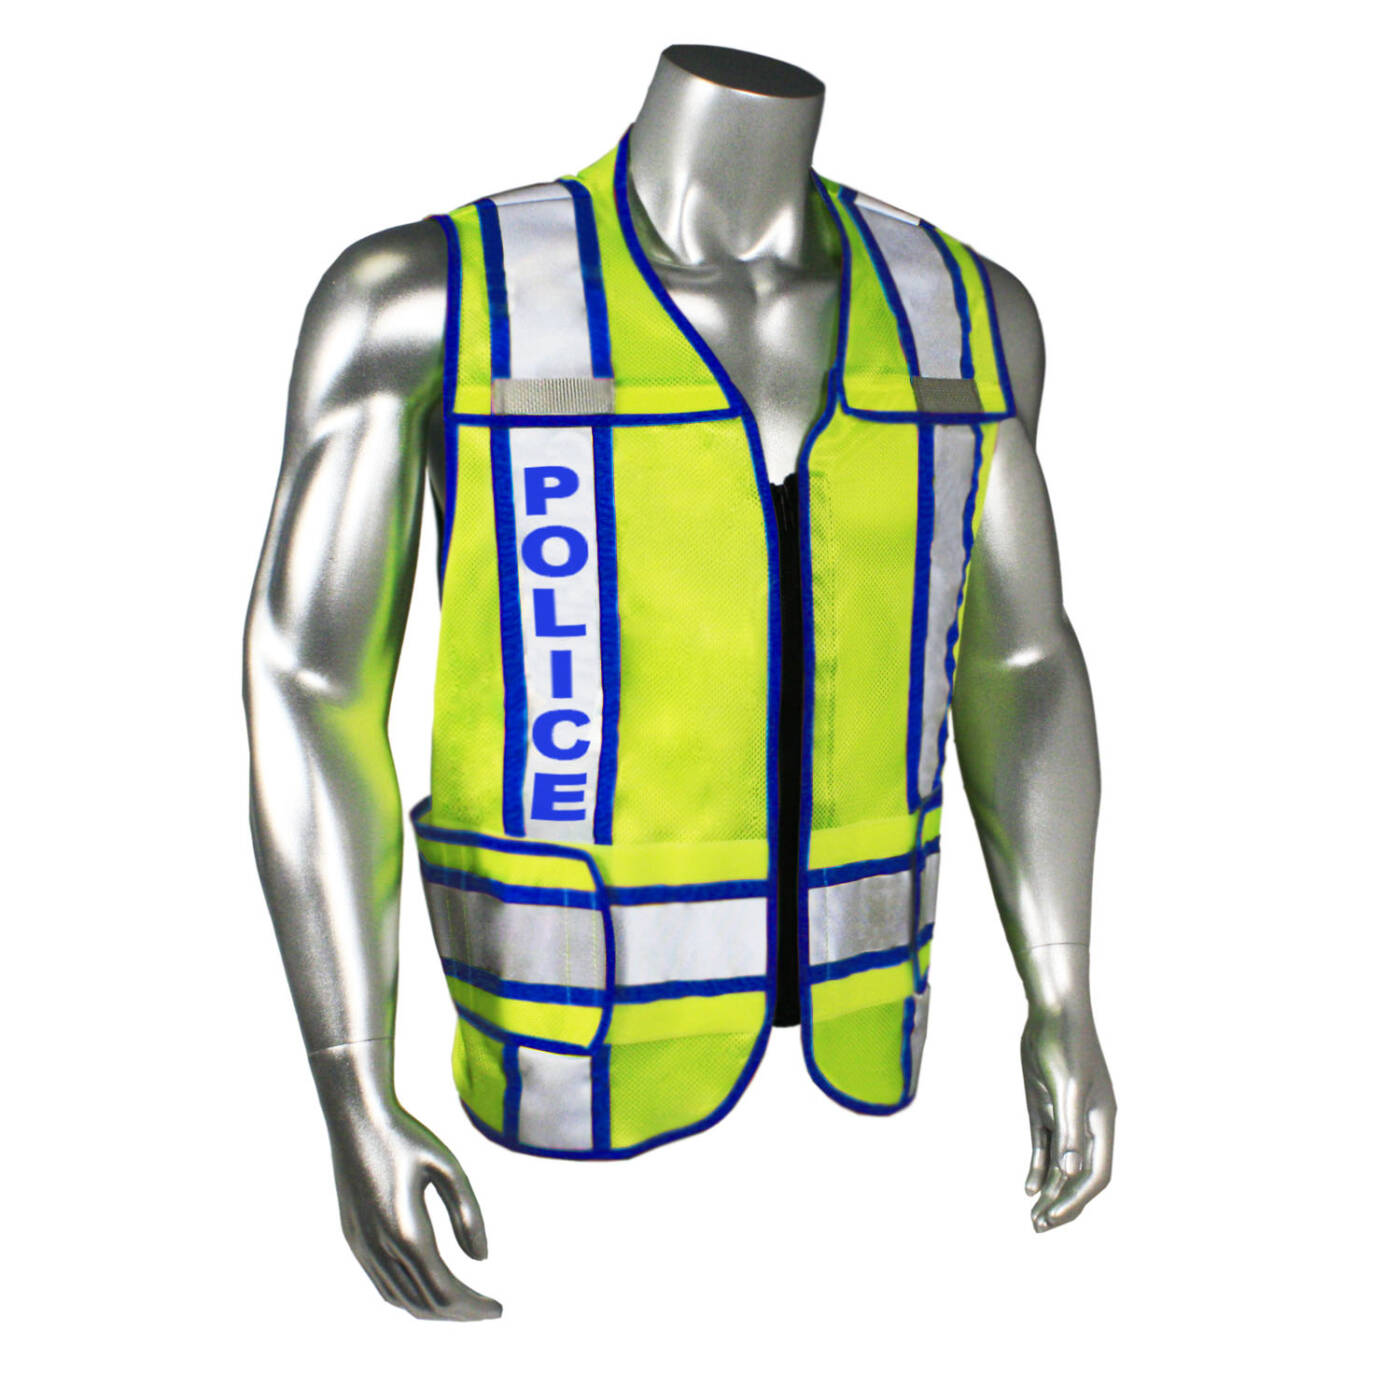 Police Reflective Safety Vest Breakaway Zip Front